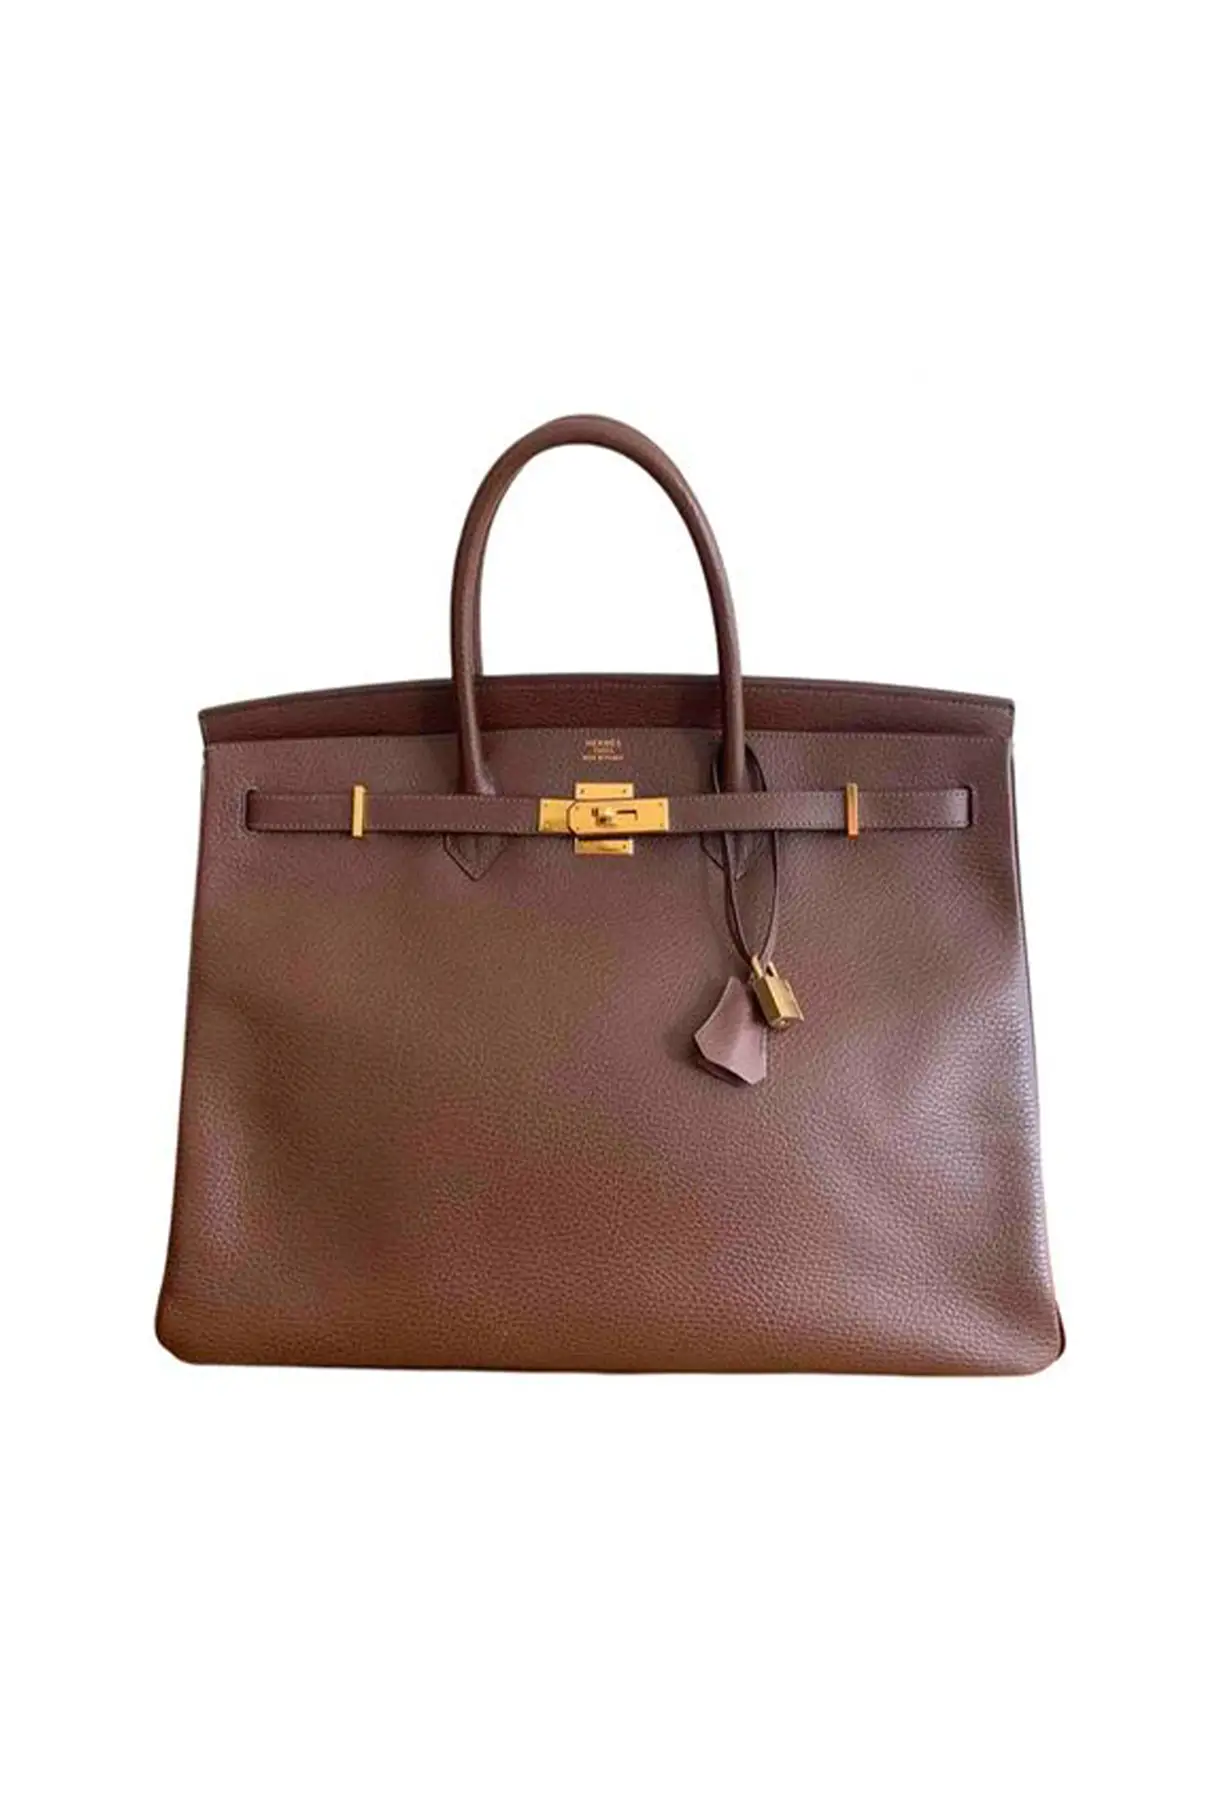 hermes-birkin-40-handbag-in-brown-leather.jpg